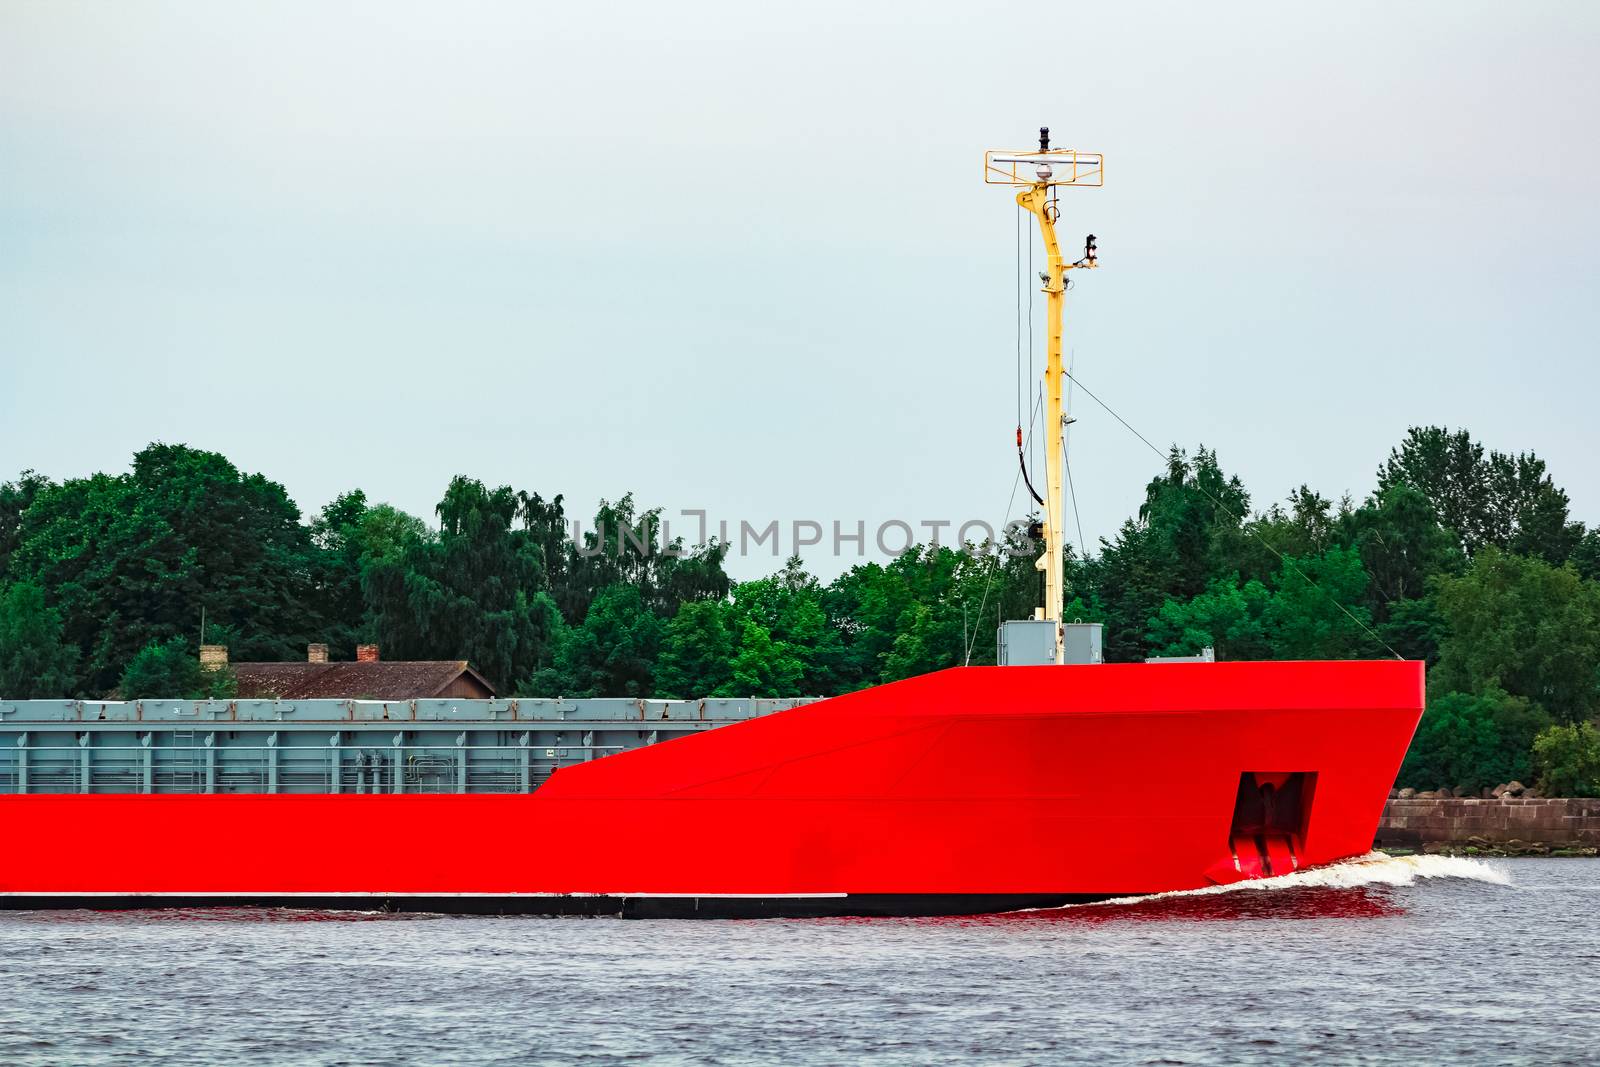 Orange bulker ship by sengnsp